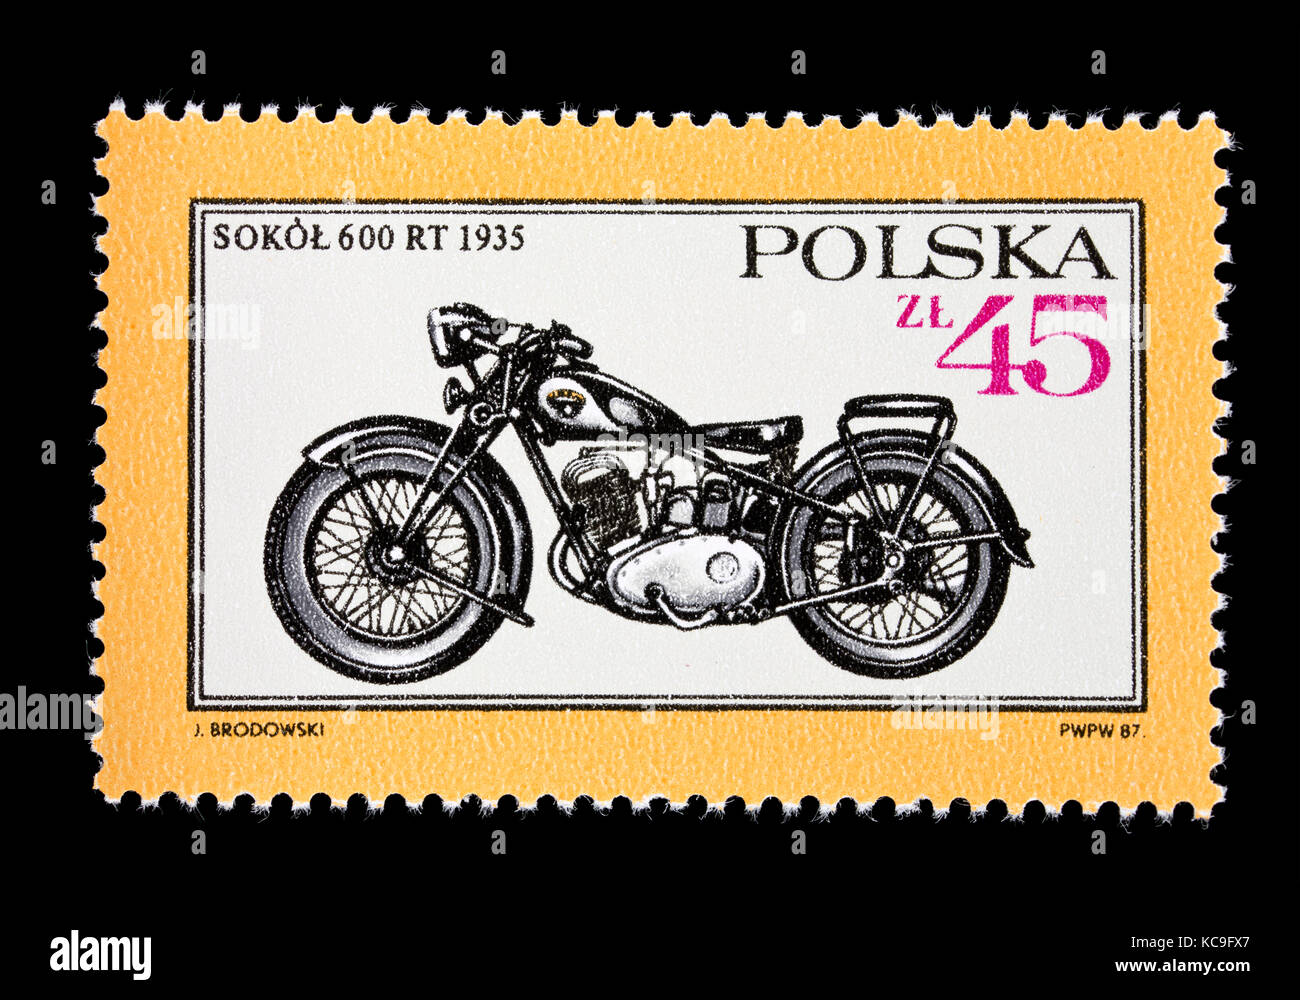 Briefmarke aus Polen mit der Darstellung eines 1935 Sokol 600 RT Motorrad  Stockfotografie - Alamy